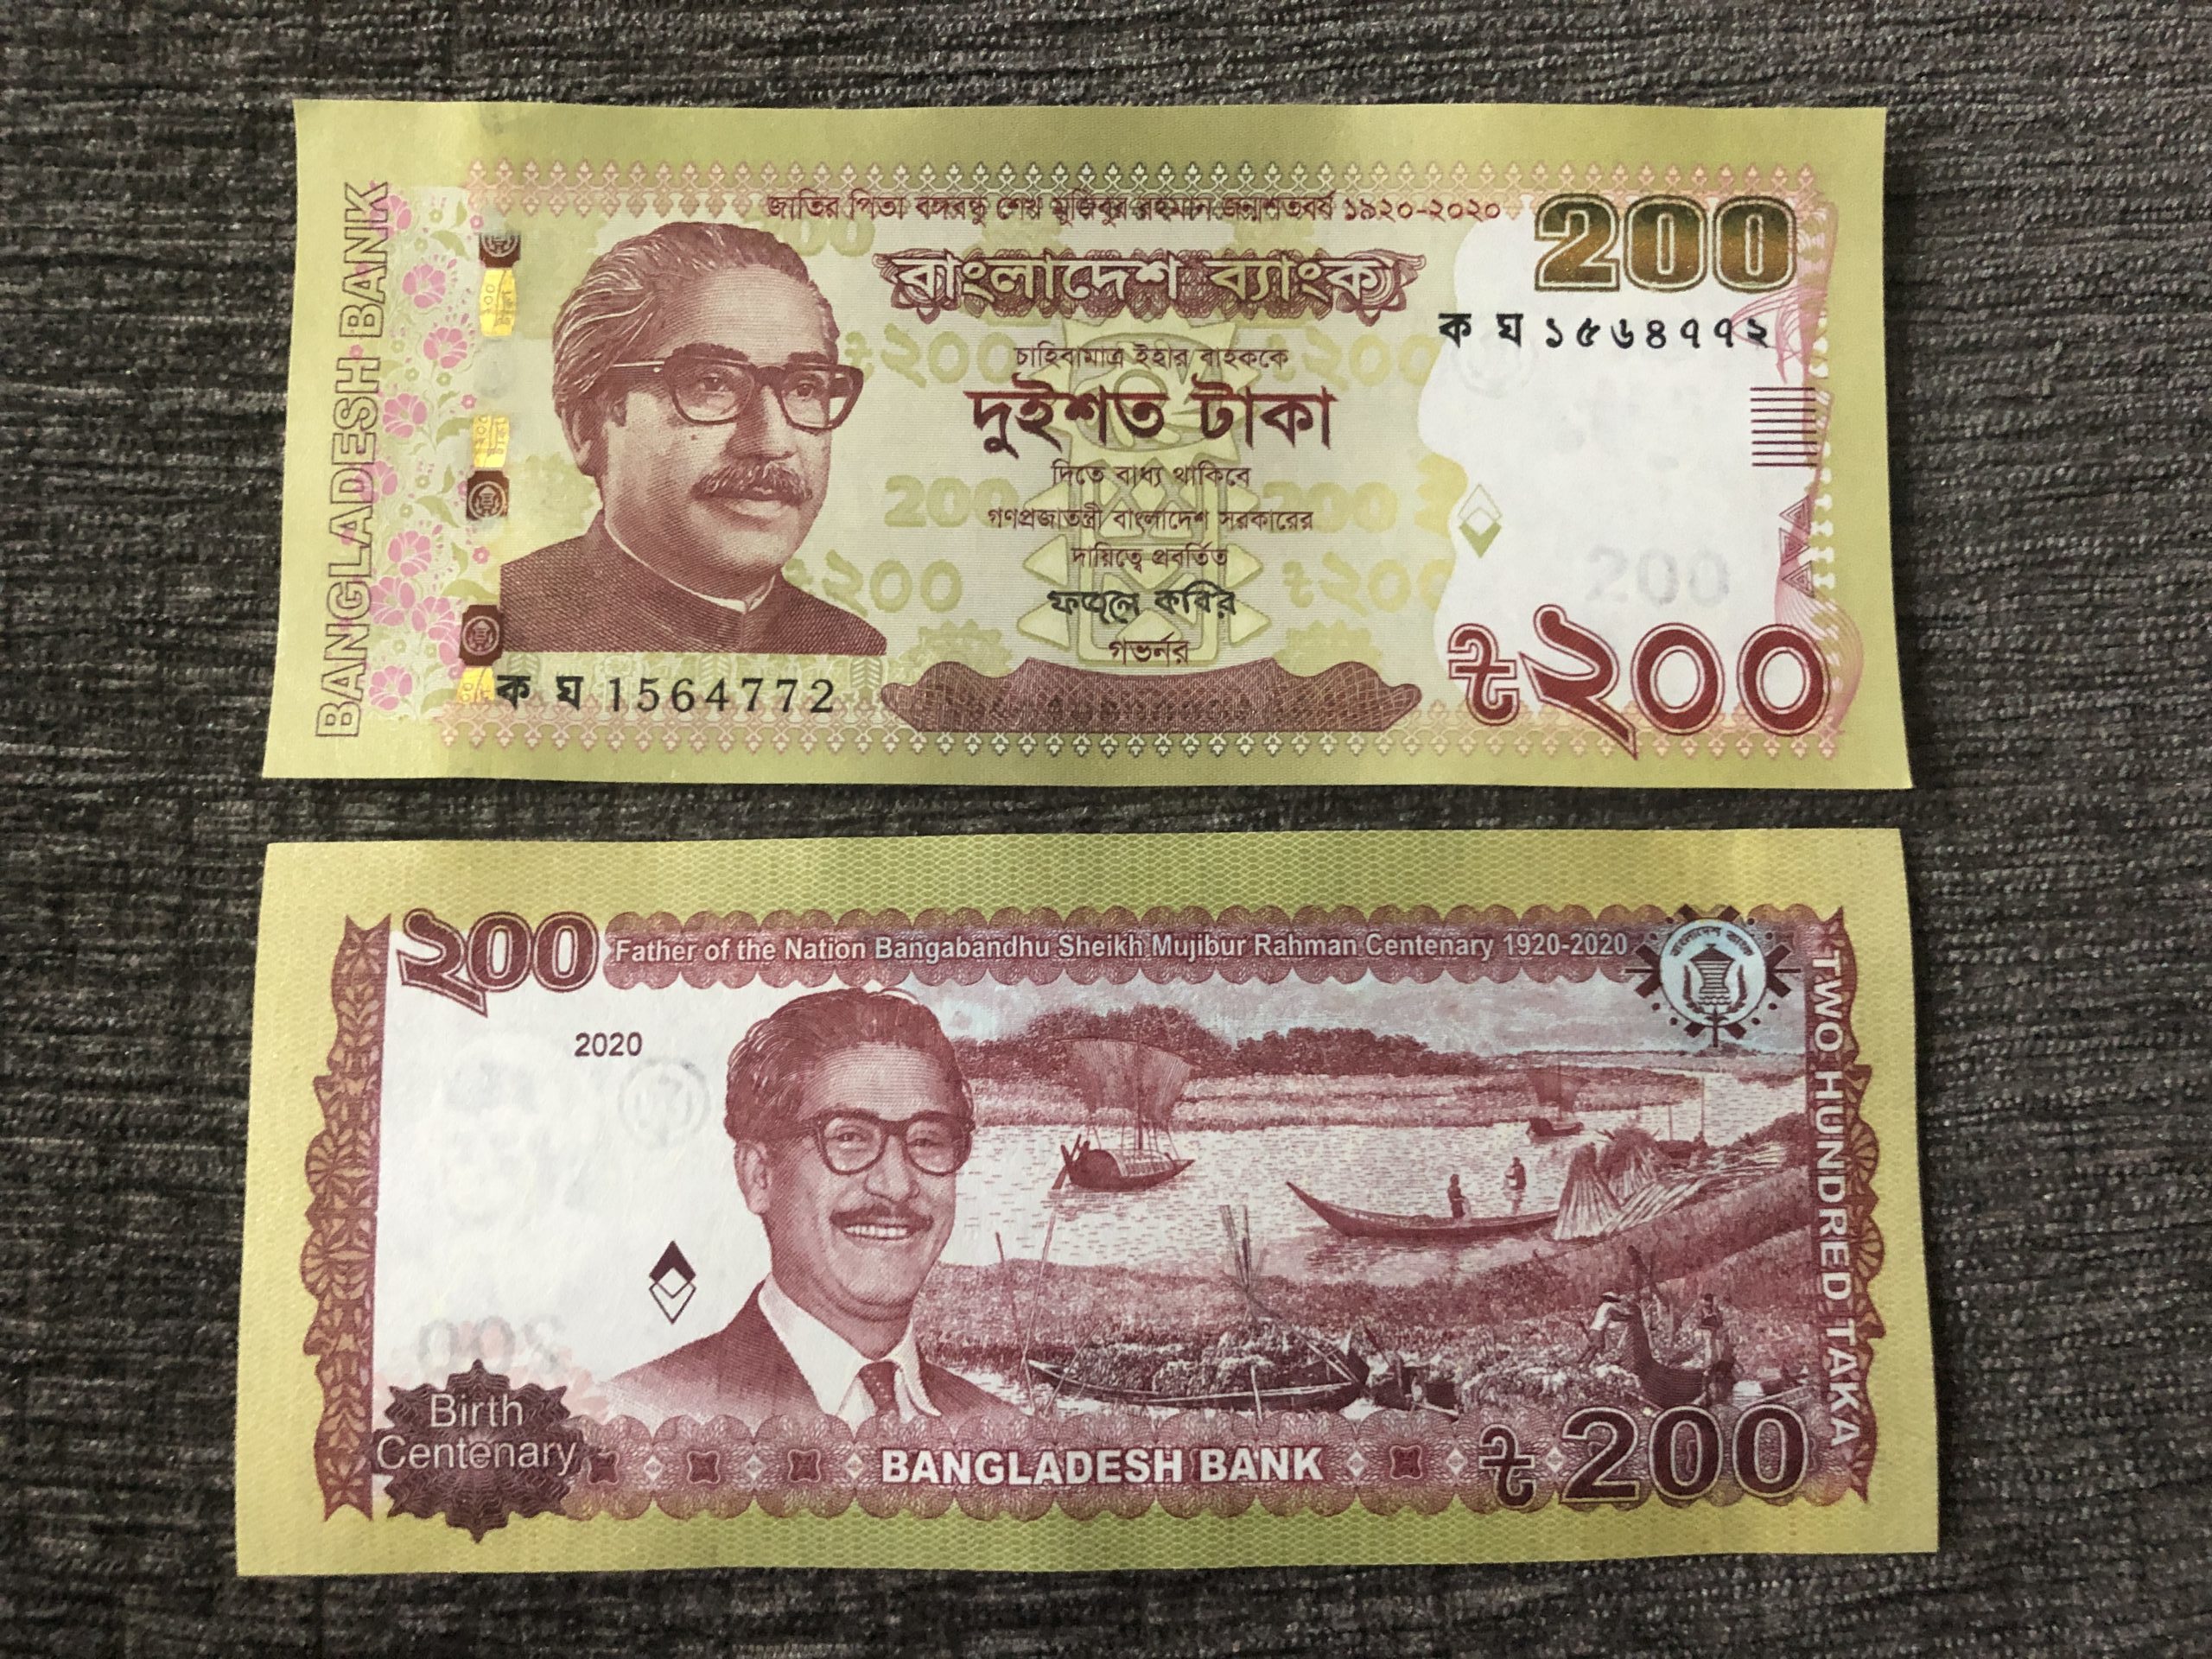 バングラデシュの国父生誕100周年を記念して発行された「200タカ紙幣」